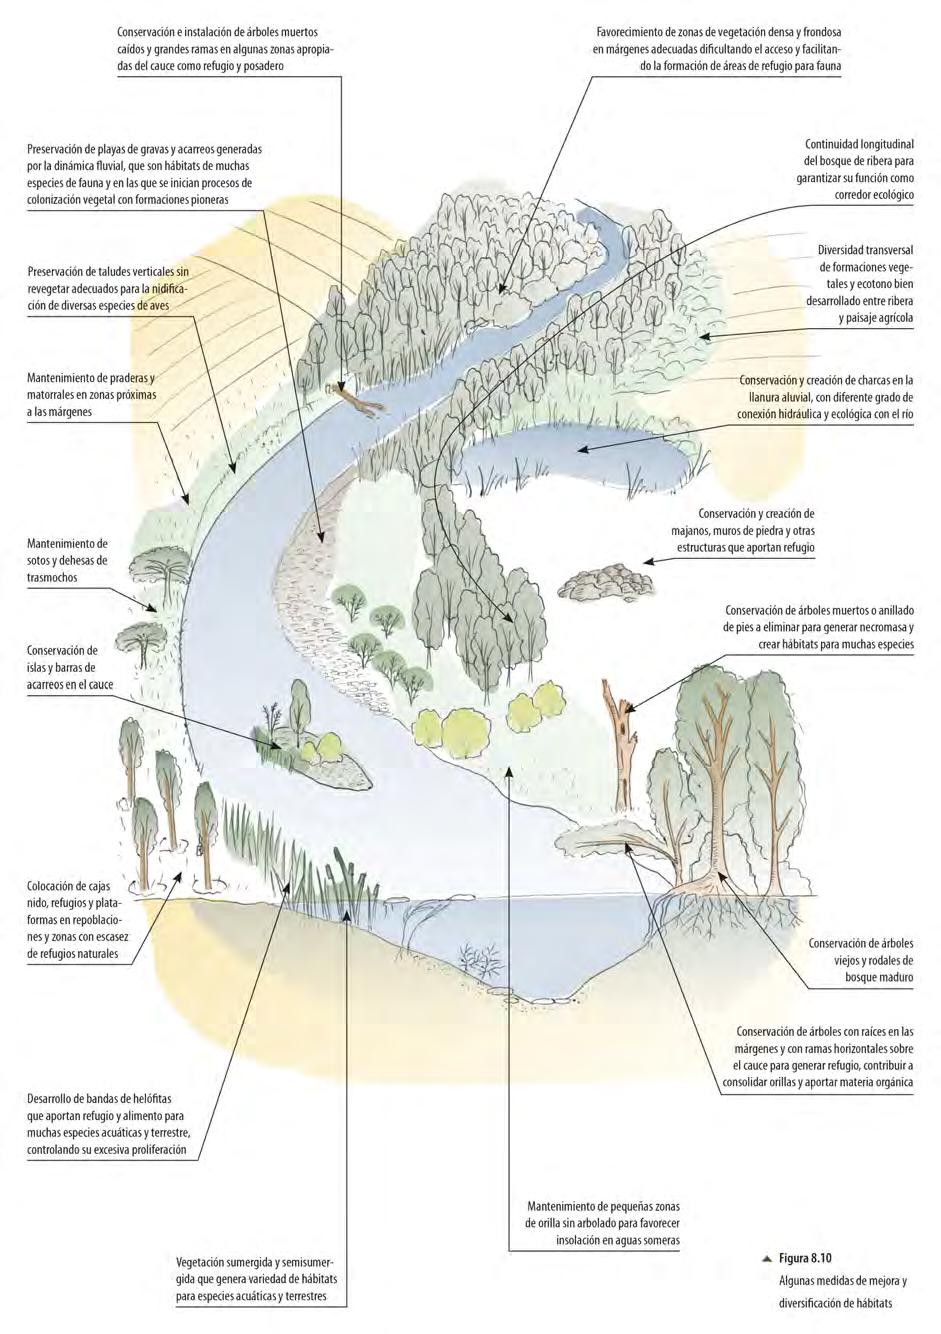 Figura 130. Medidas de gestión y restauración del hábitat ribereño para la fauna.